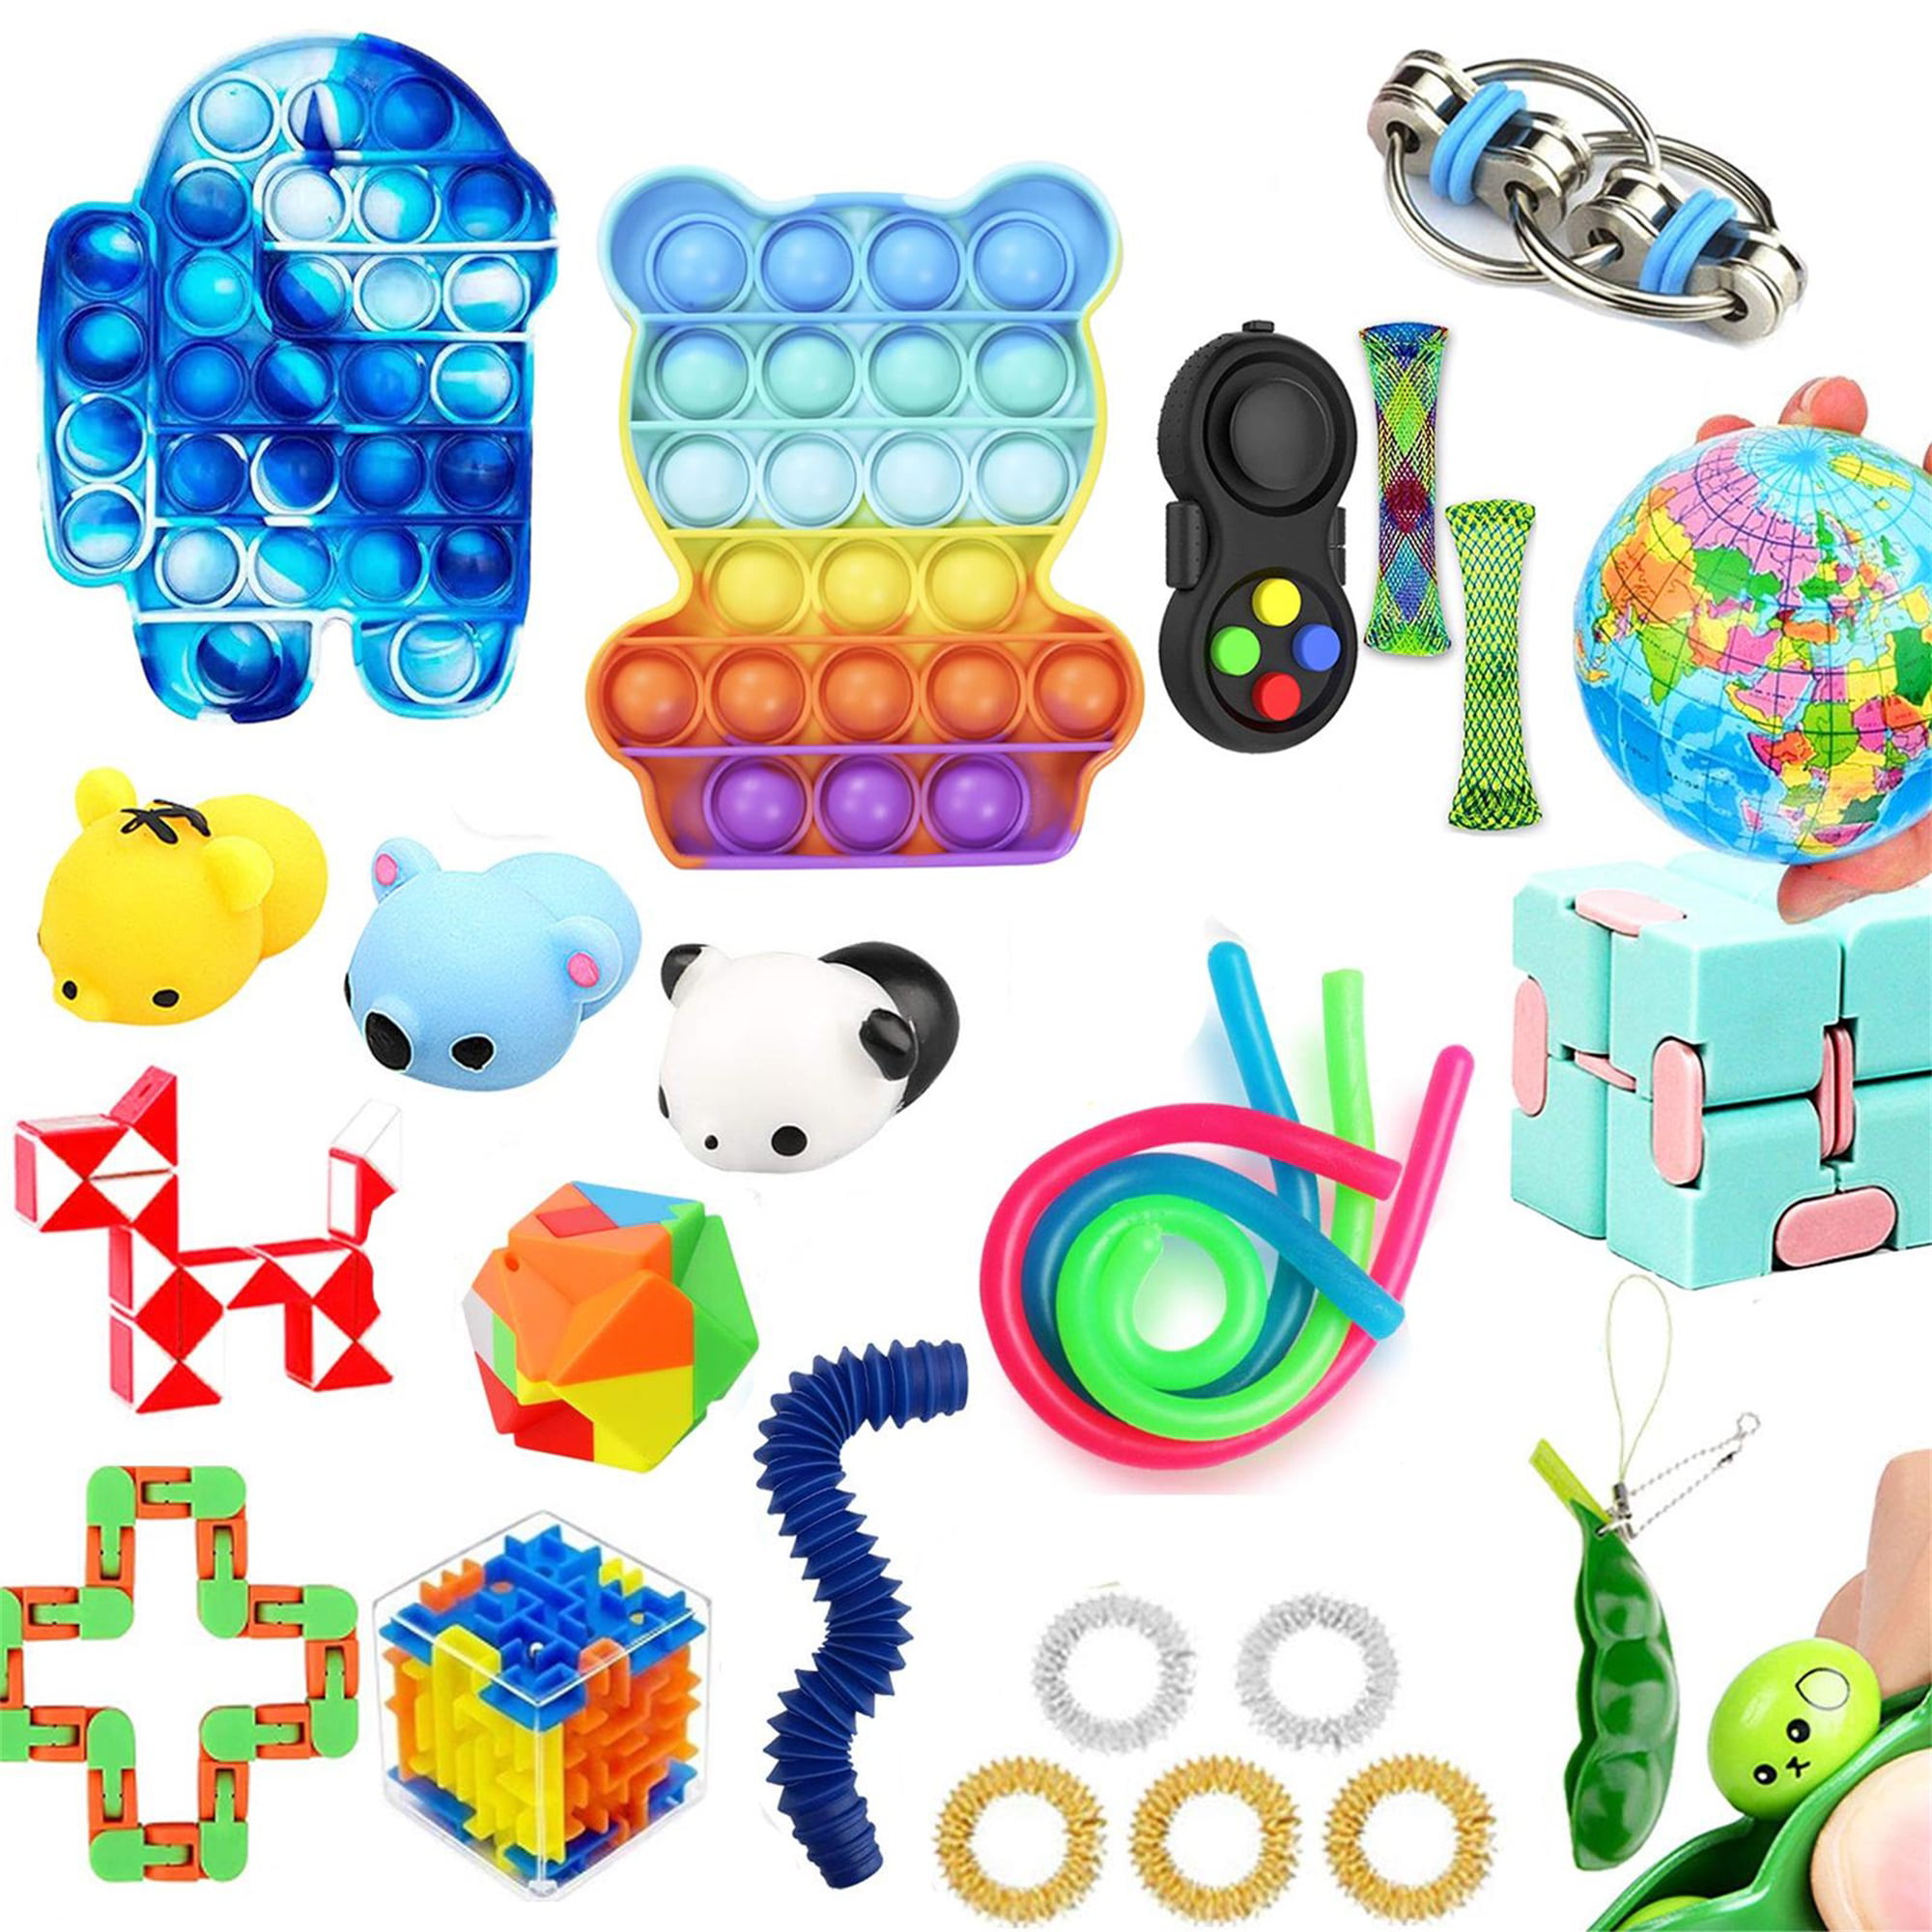 Details about   Simple Dimple Special Needs Silent Sensory Fidget Kids Toys Autism Classroom Hot 